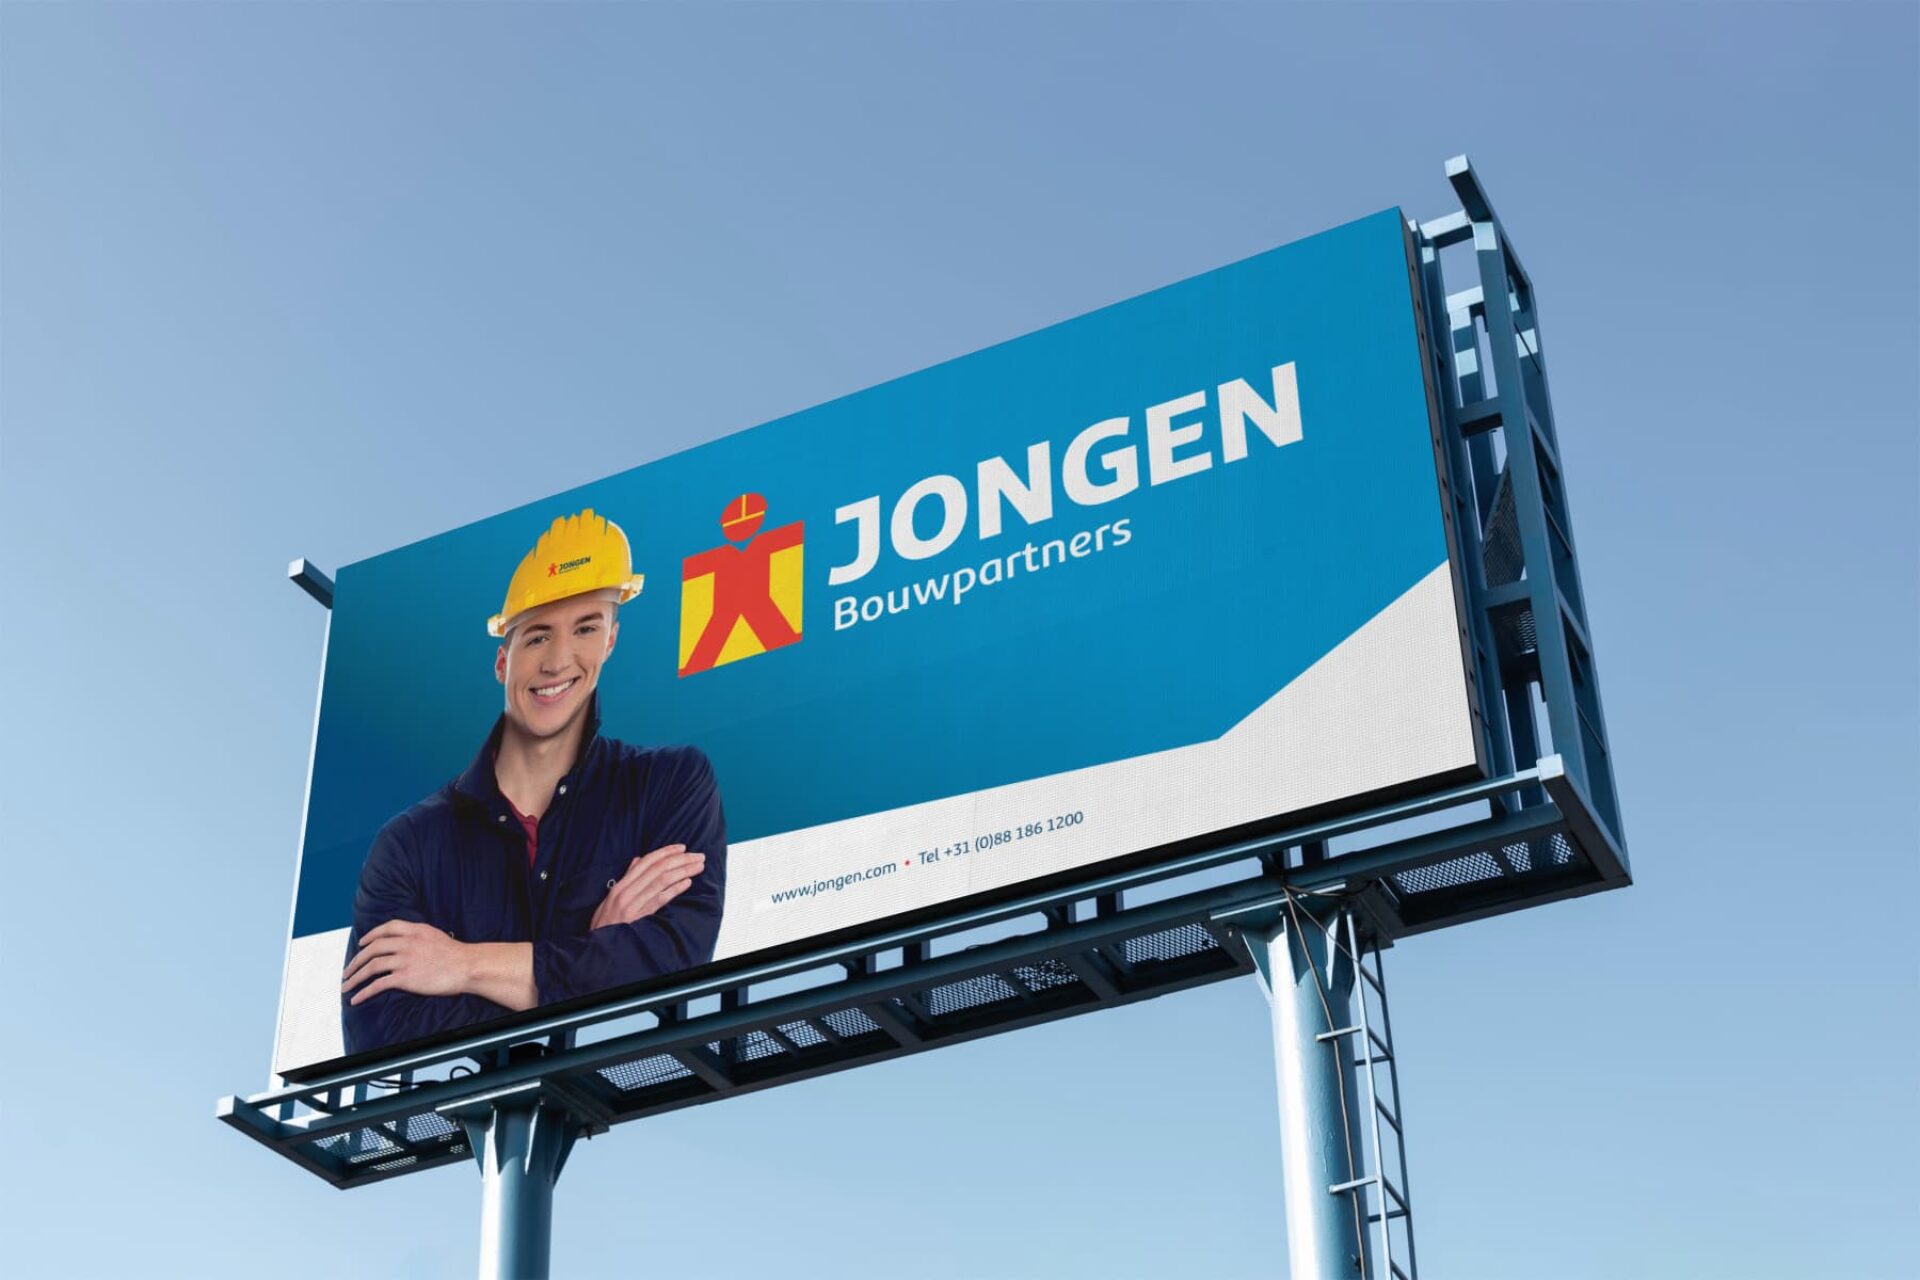 Bouwbedrijven Jongen billboard - Rene Verkaart)